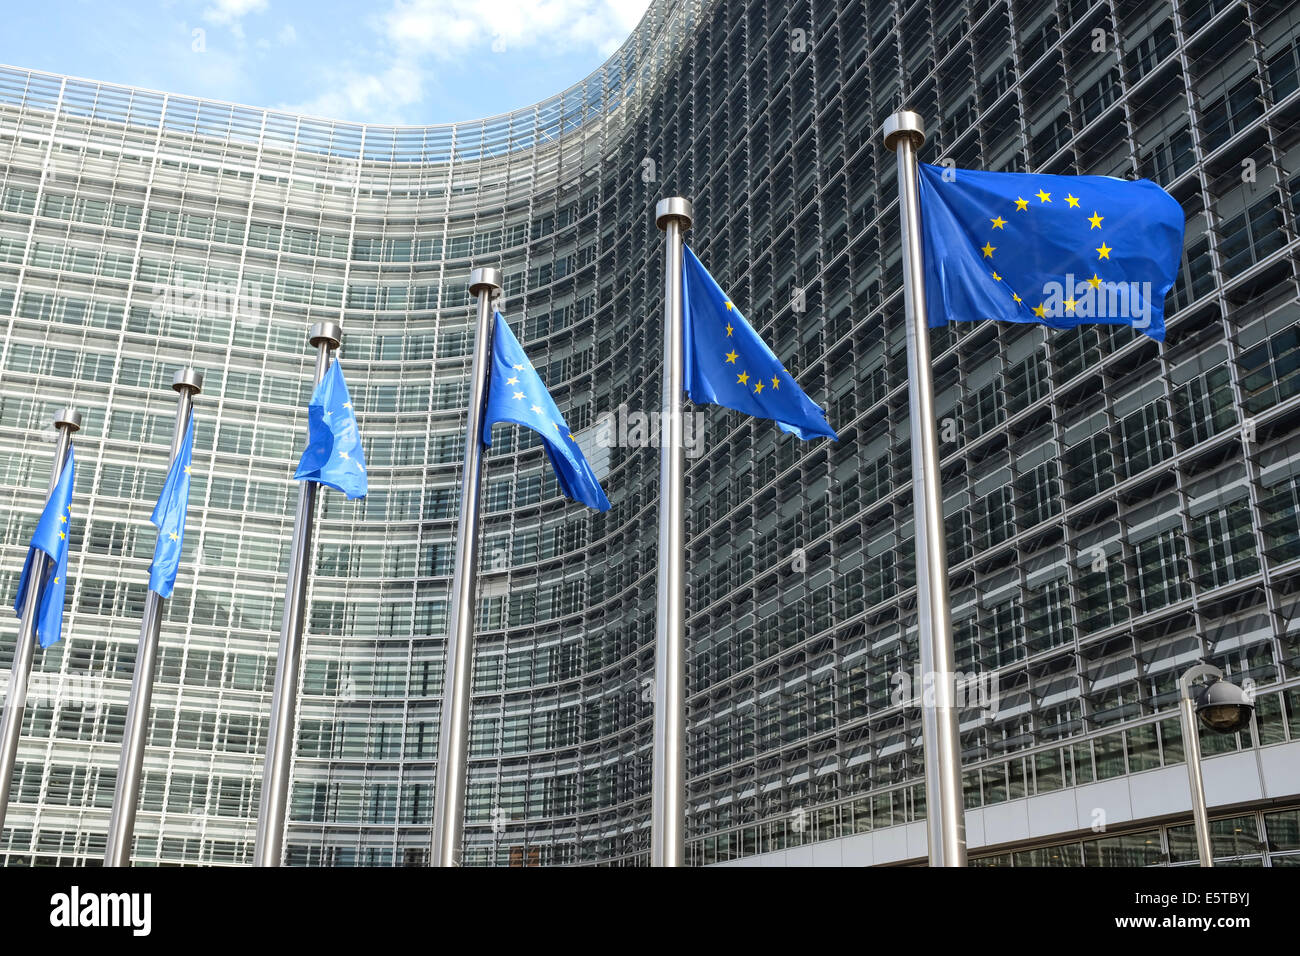 Drapeaux de l'Union européenne devant le bâtiment du Berlaymont (Commission européenne), 200, Bruxelles, Belgique Banque D'Images